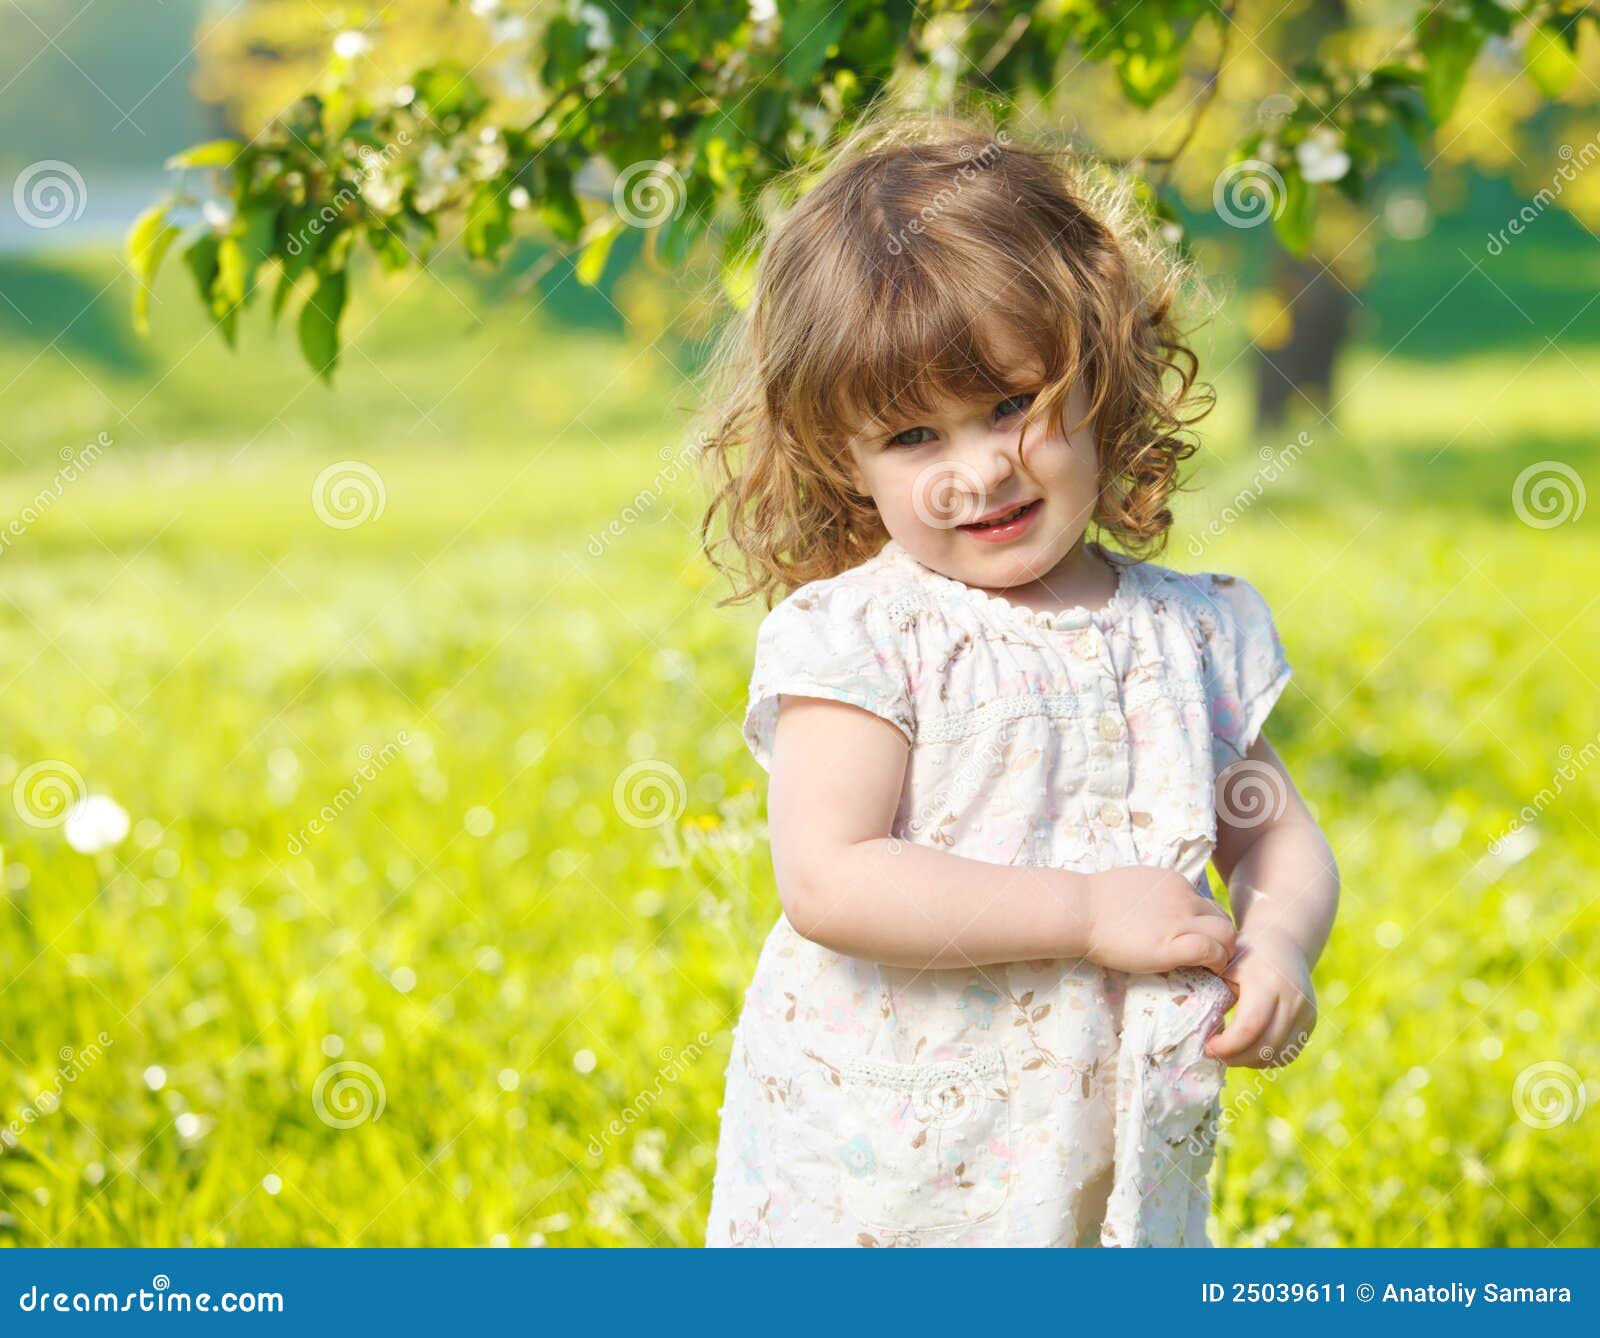 春天庭院、春天花、可爱的小女孩和郁金香 与一个篮子的逗人喜爱的孩子在开花的庭院里在温暖的天 库存照片 - 图片 包括有 快乐, 庭院 ...